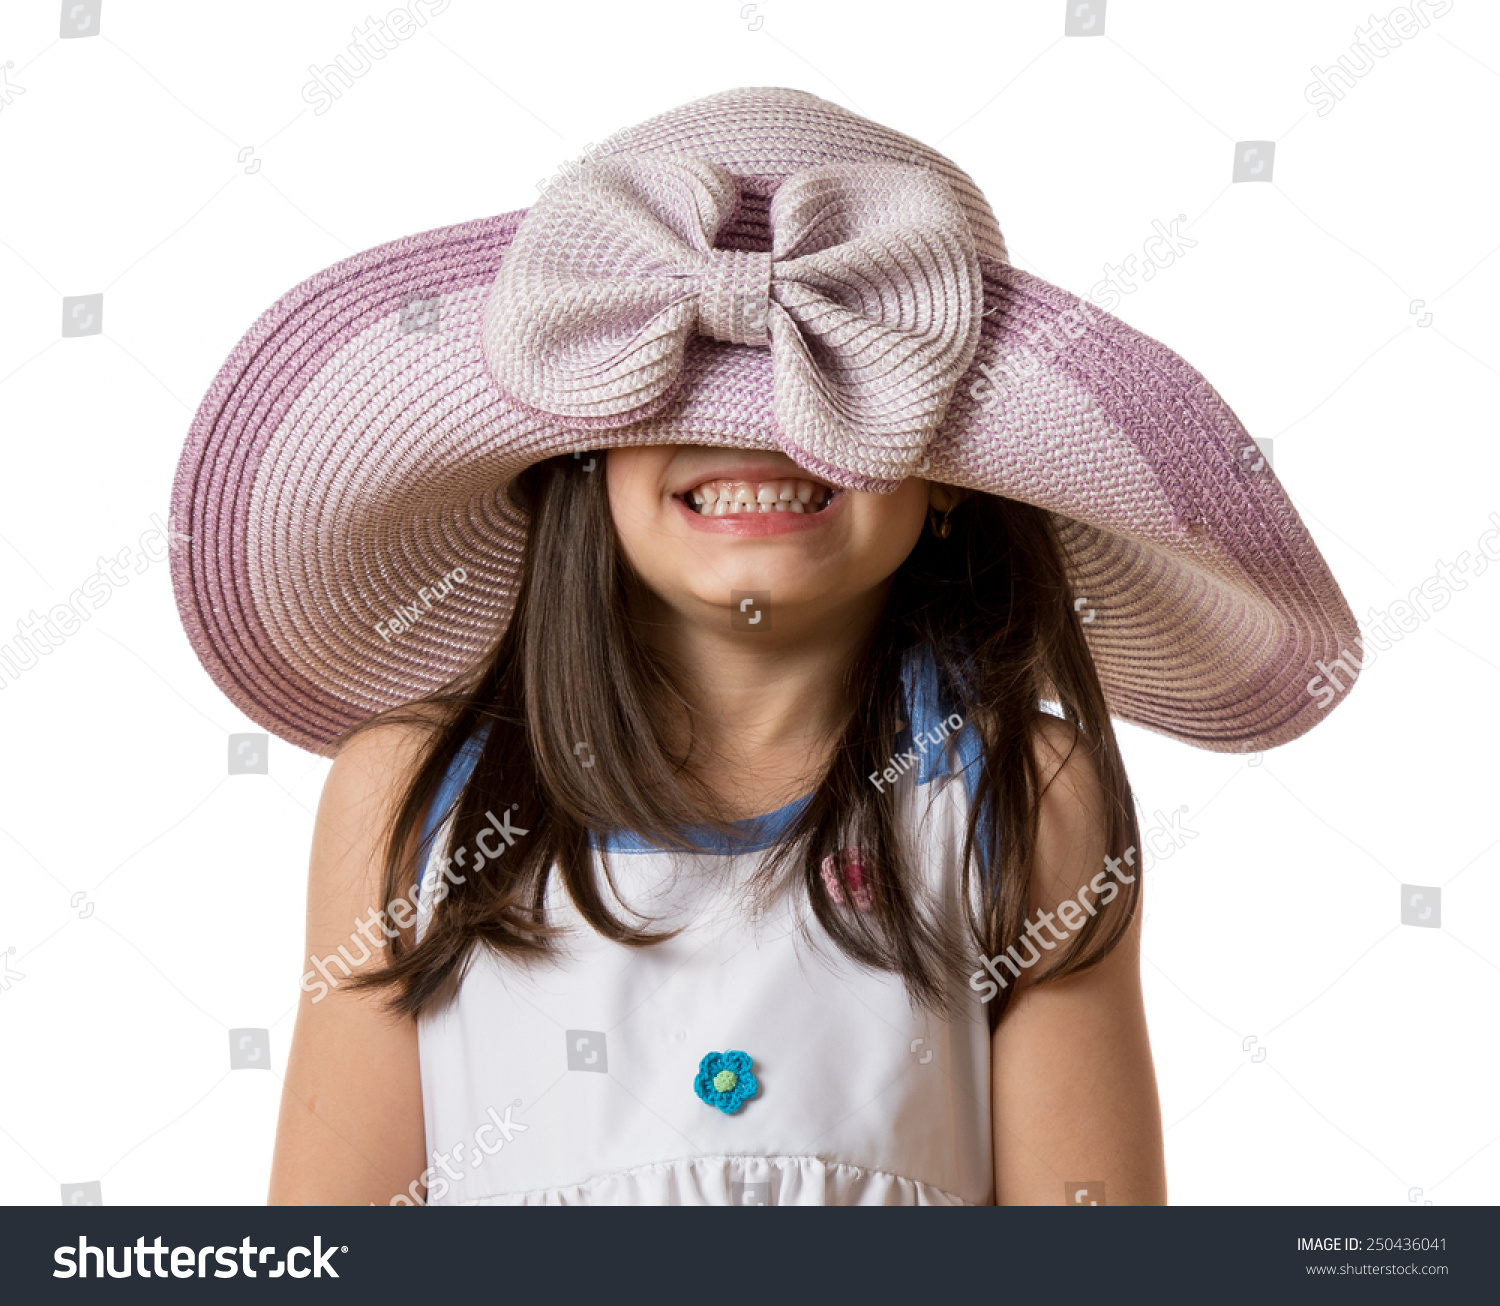 Funny girl in hat